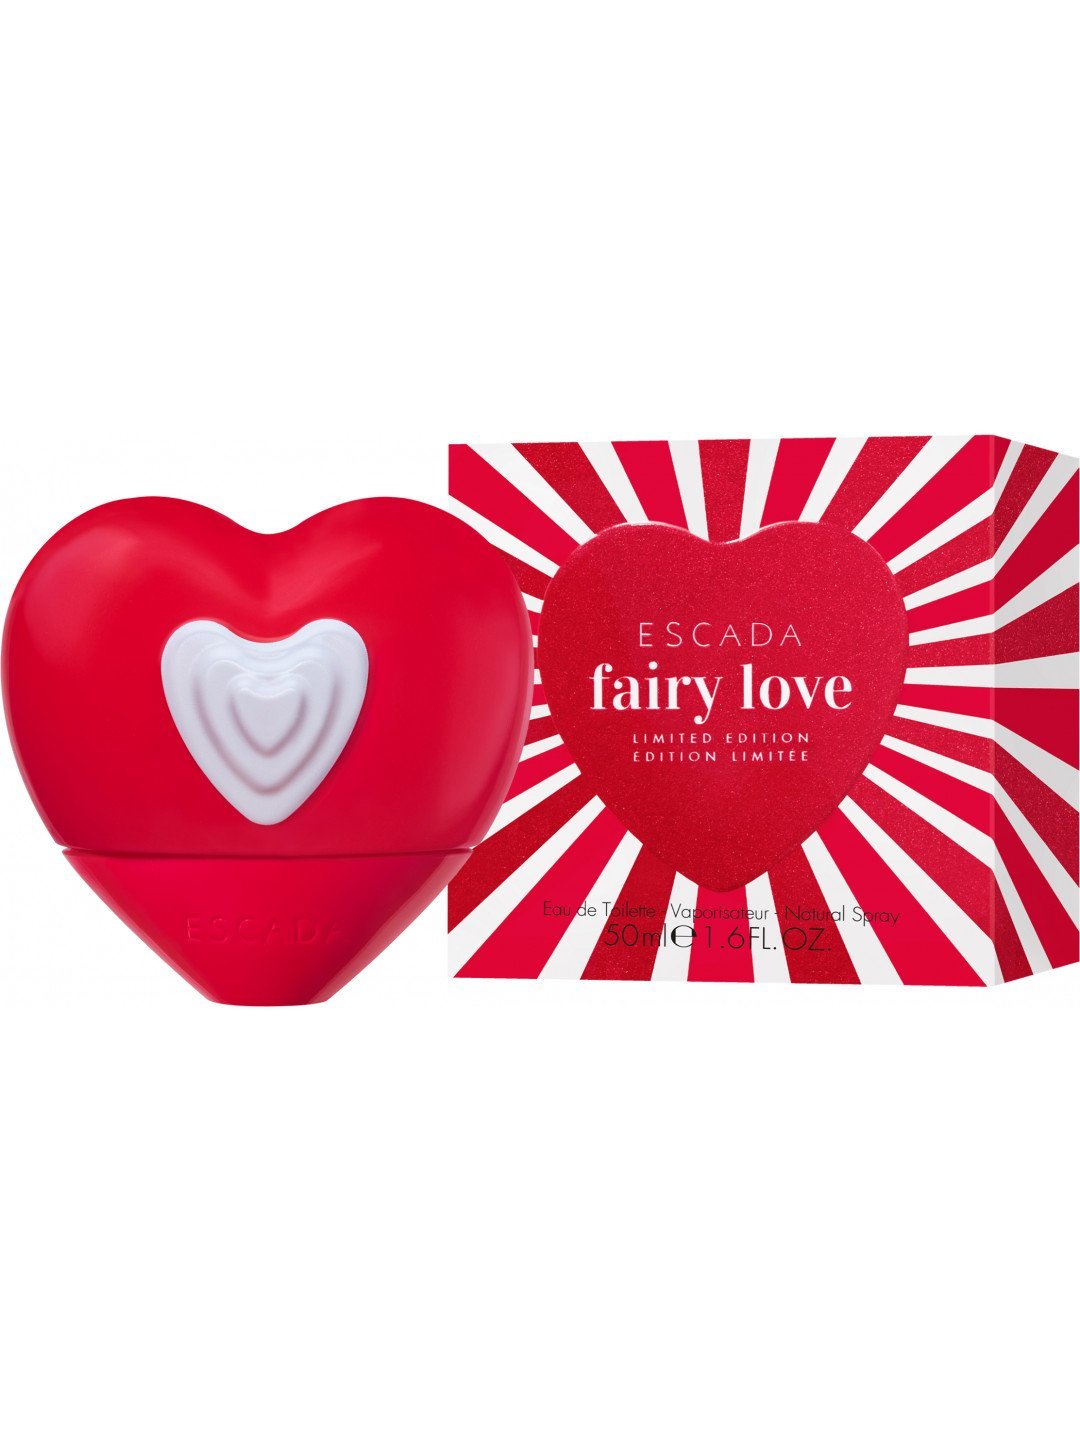 Escada Fairy Love Limited Edition – EDT 100 ml